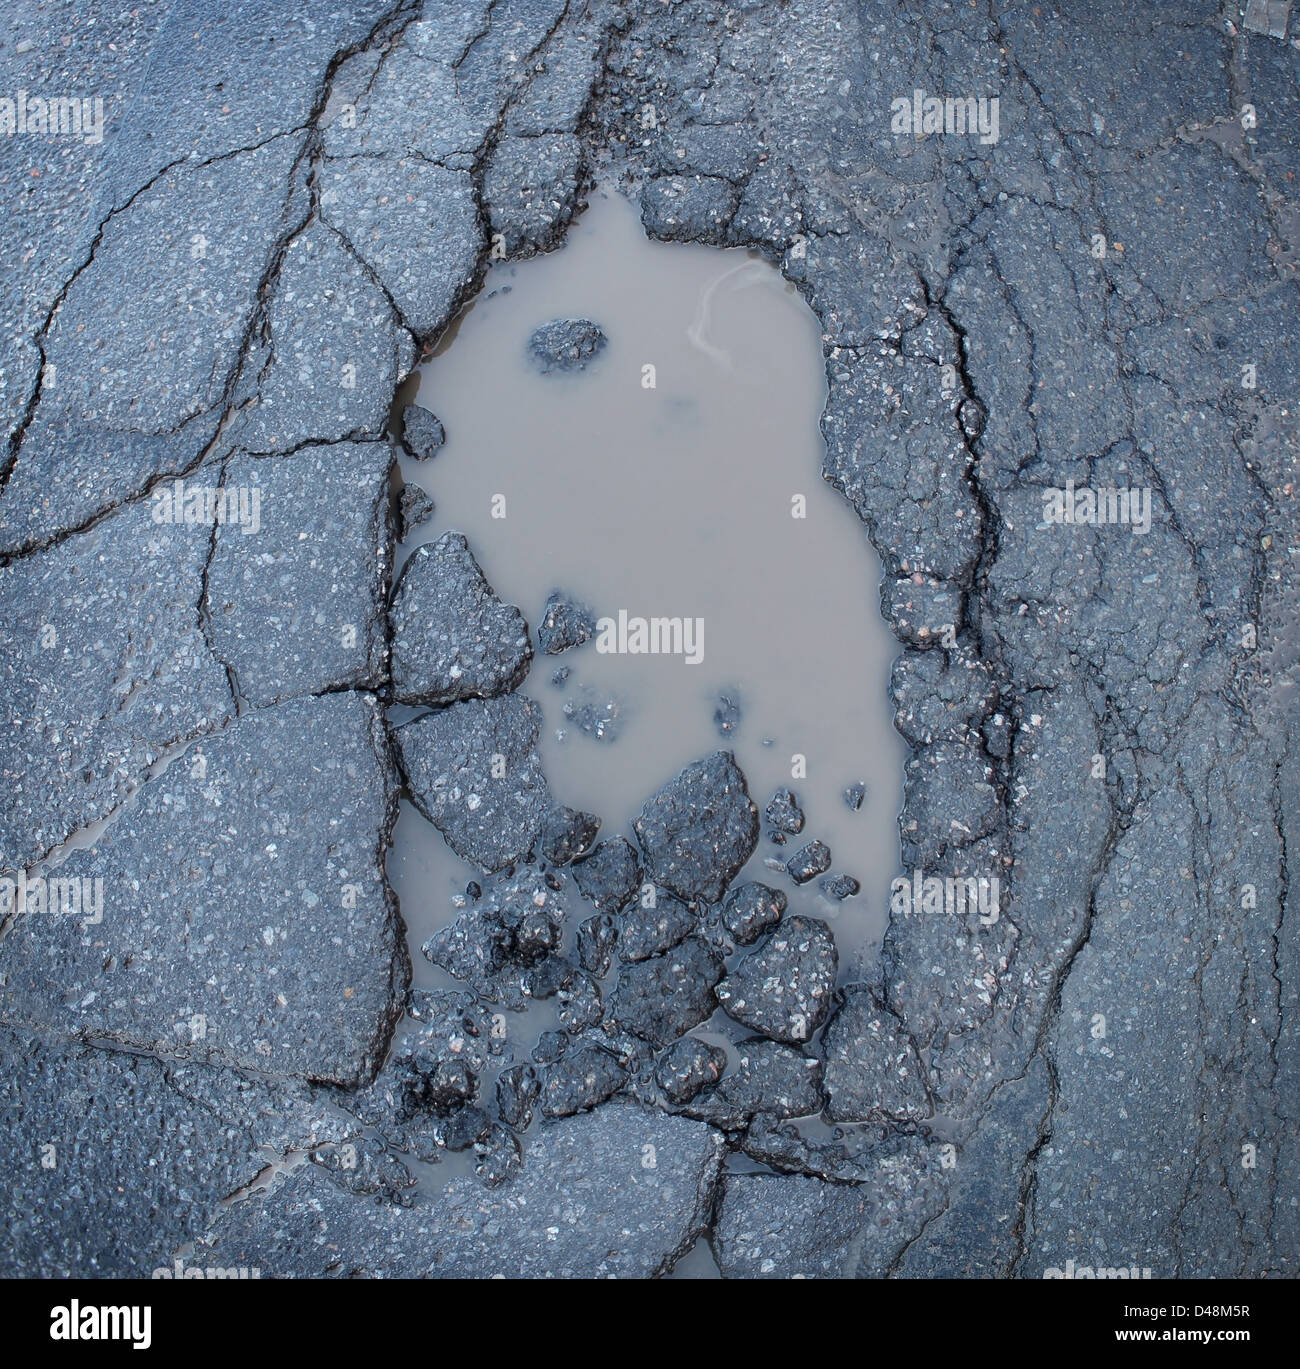 Buca o buca immagine di una rottura asfalto con una sporca pozza d'acqua come un simbolo di trasporto della manutenzione stradale e le auto di assicurazione rischio di sospensioni auto. Foto Stock